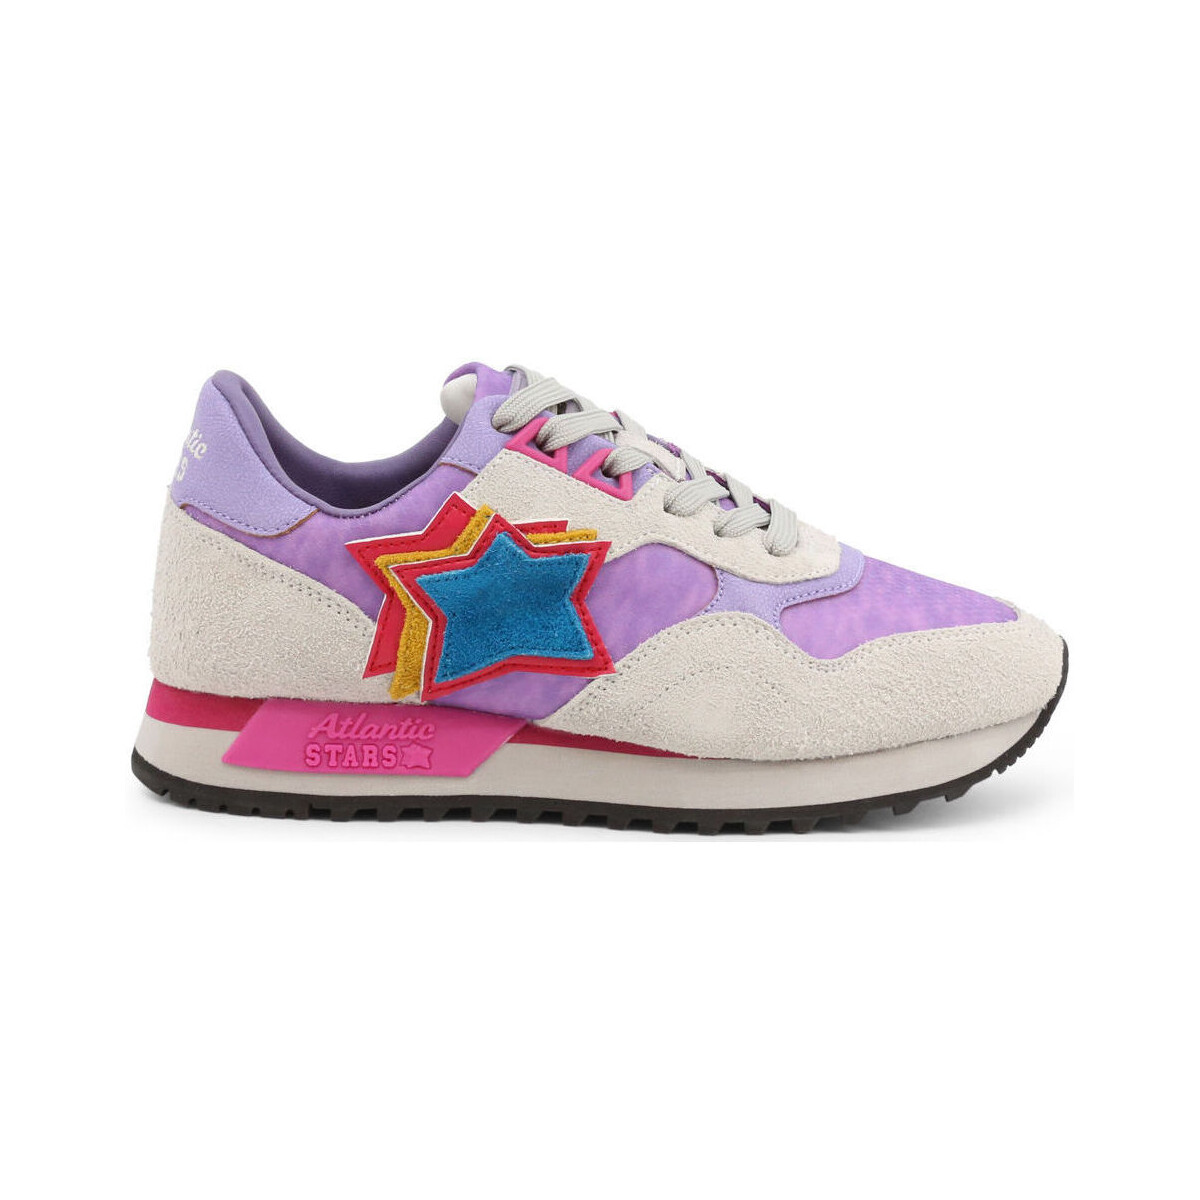 Παπούτσια Γυναίκα Sneakers Atlantic Stars ghalac-ylbl-dr23 violet Violet